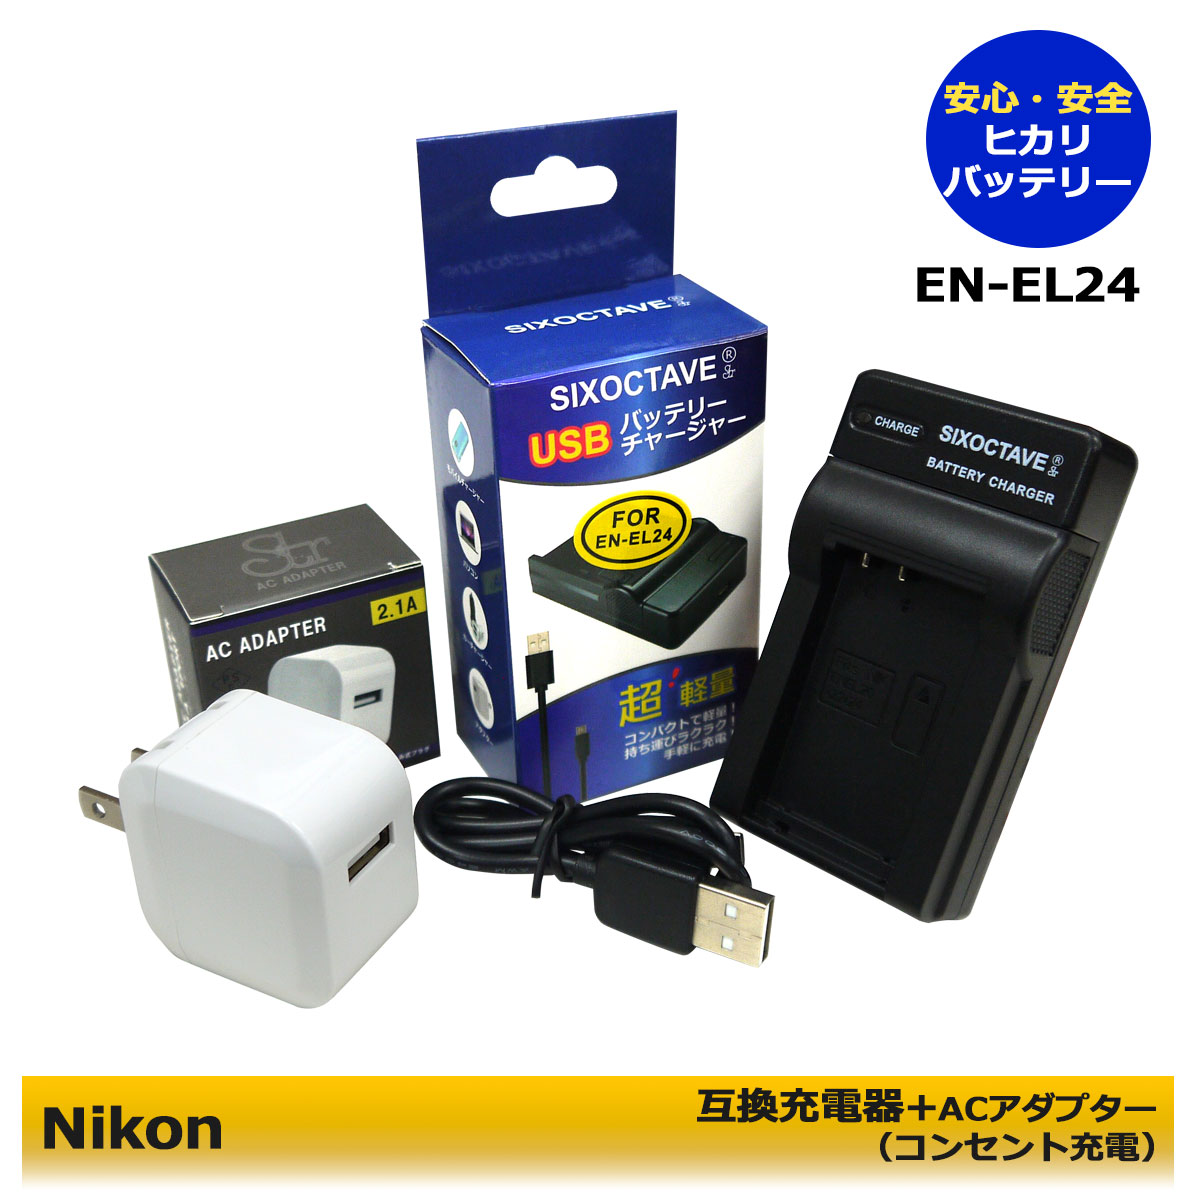 ニコン EN-EL19 ENEL19 Micro USB付き 急速充電器 互換品